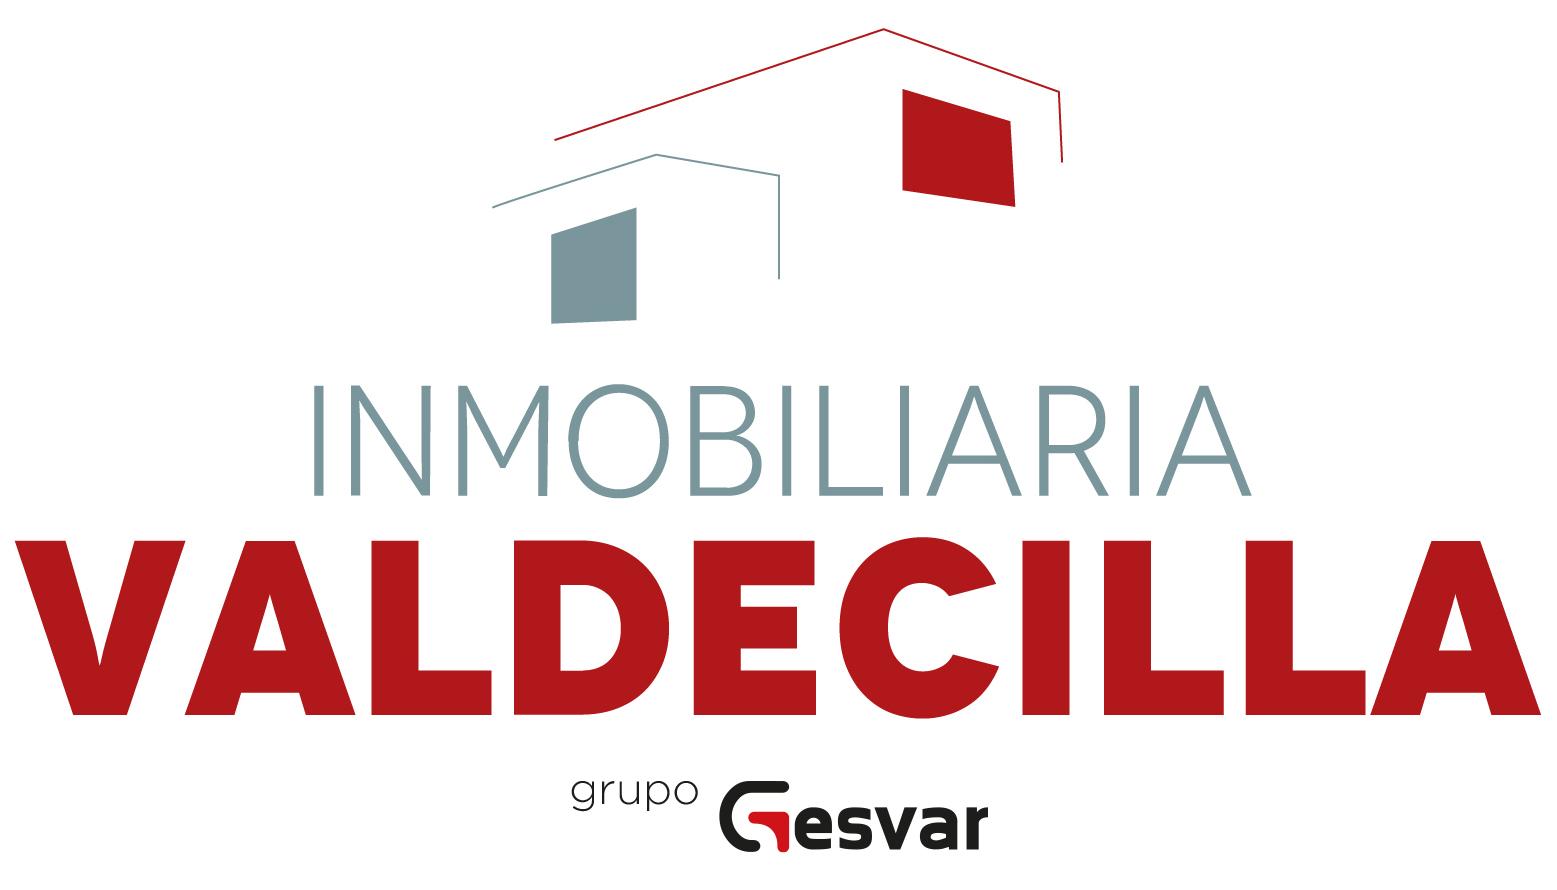 Inmobiliaria Valdecilla - grupo Gesvar